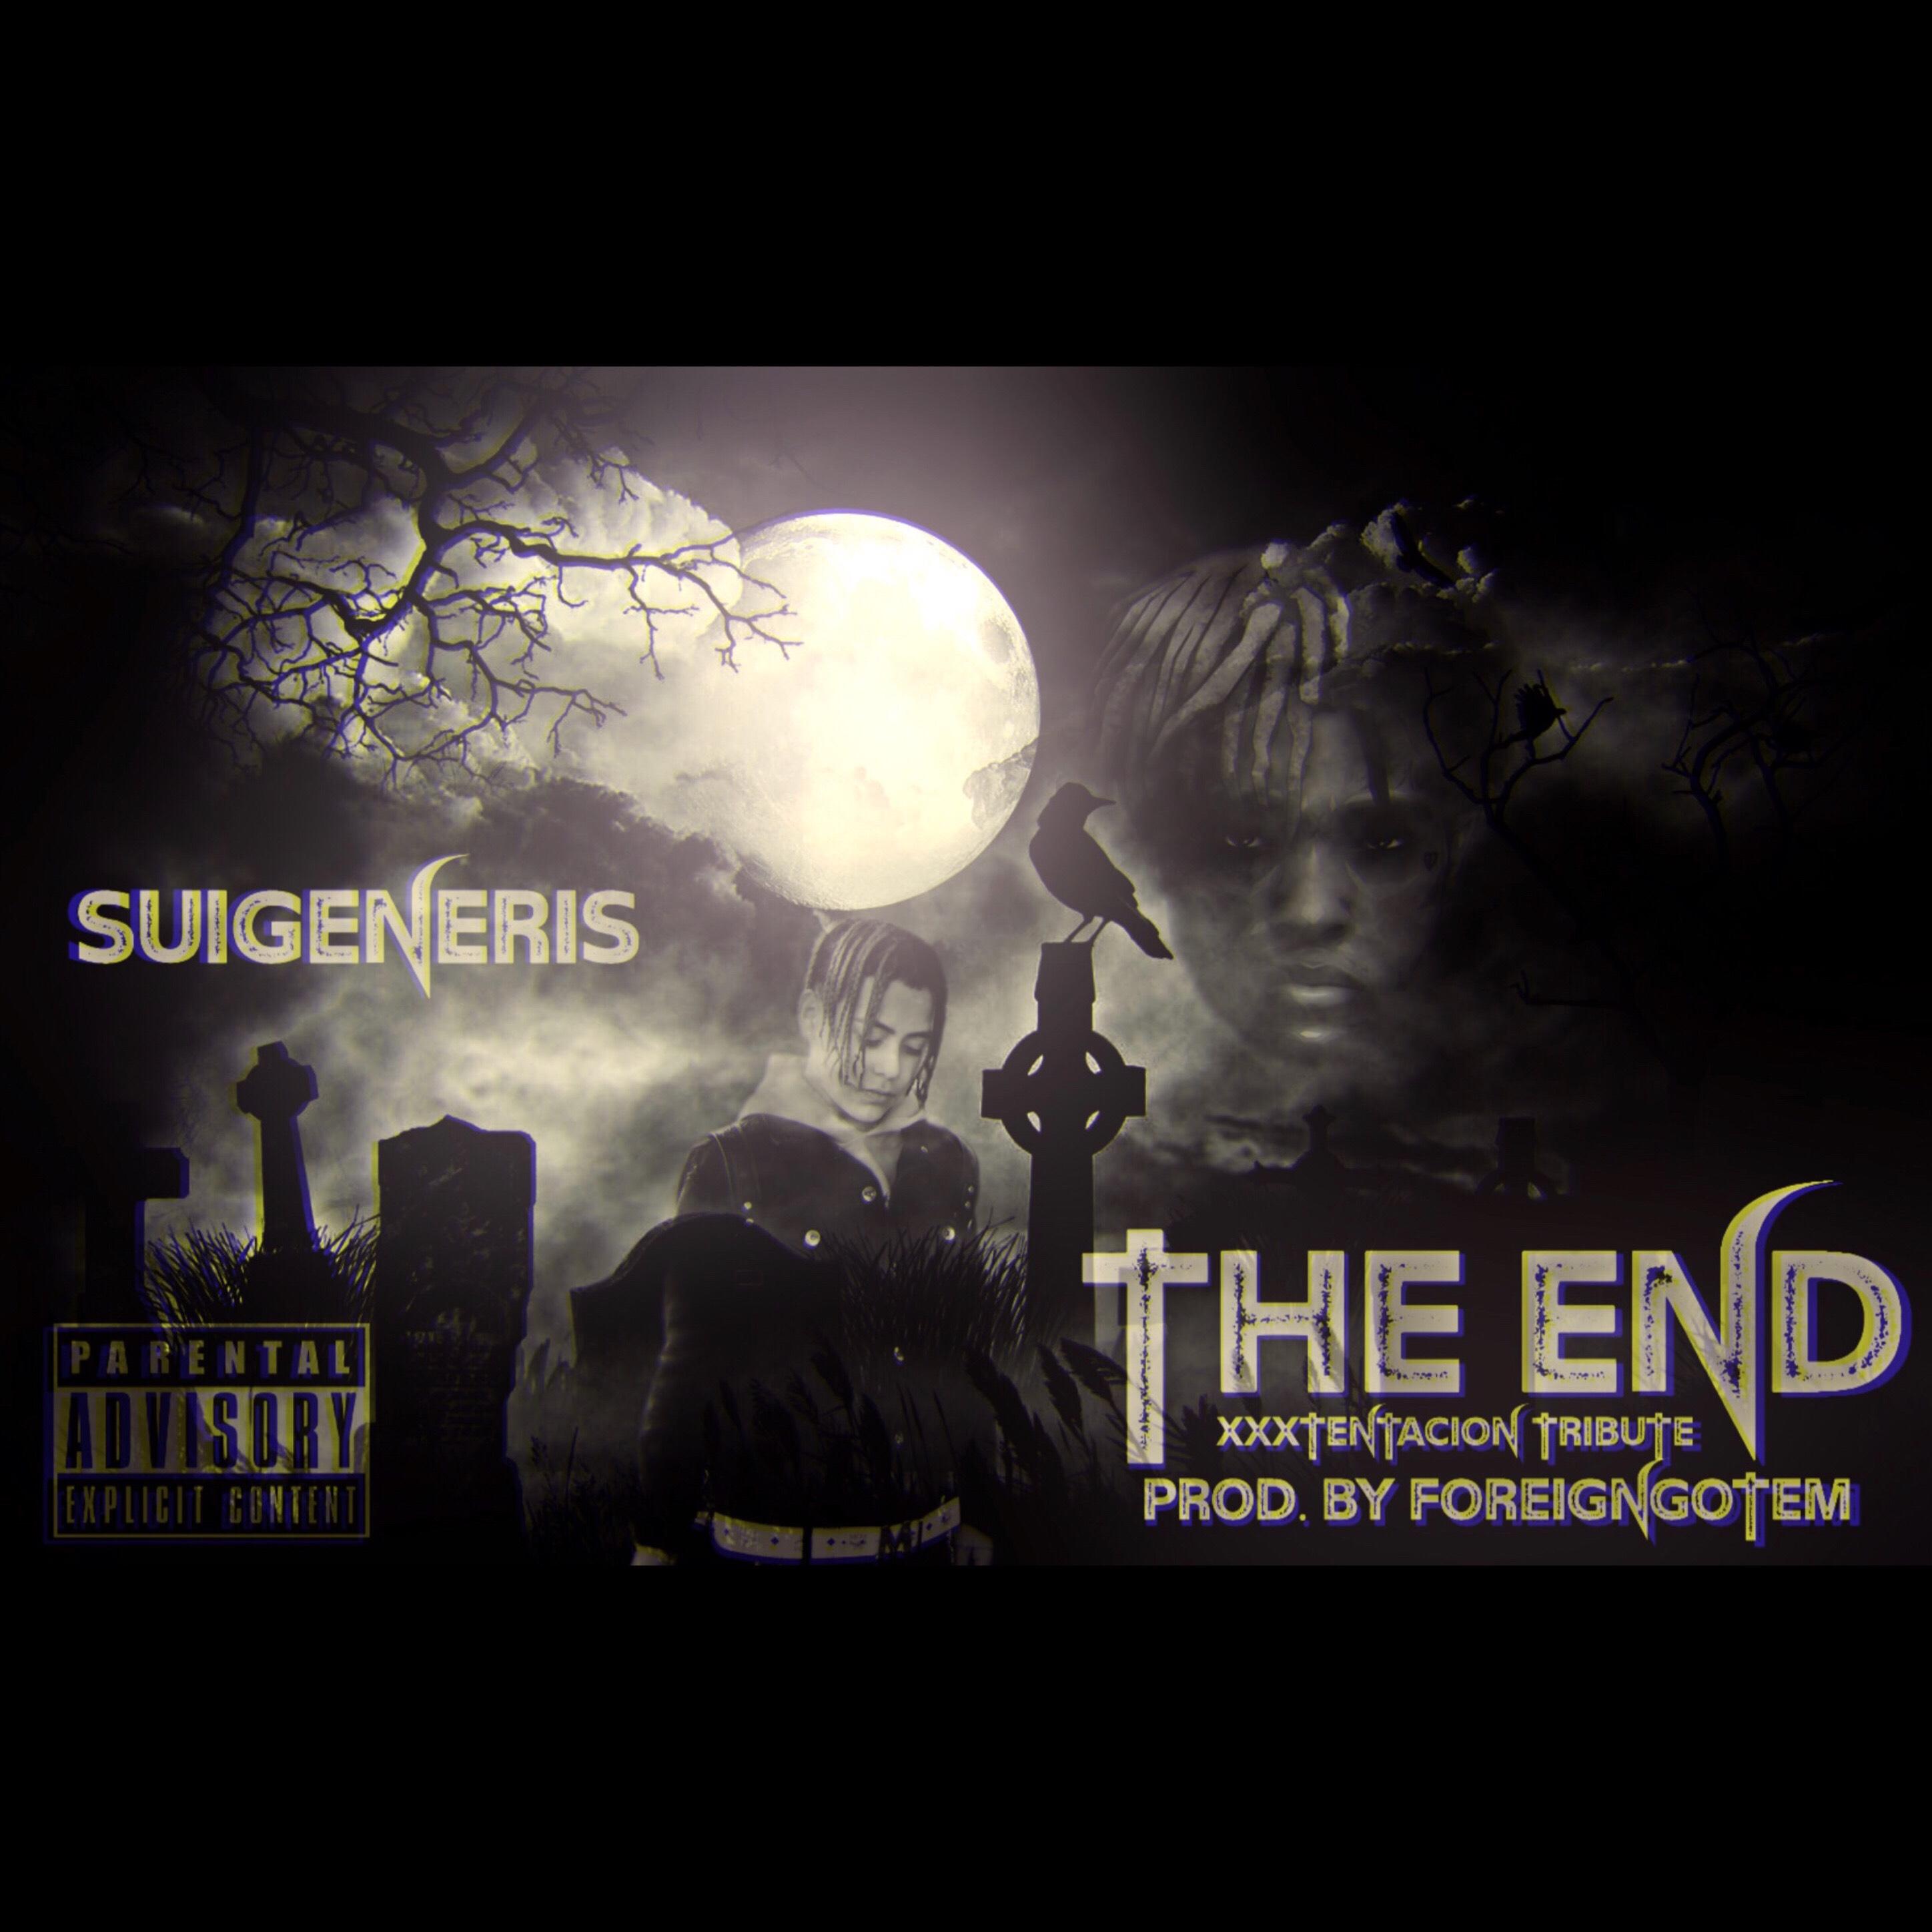 The End (XXXTentacion Tribute)